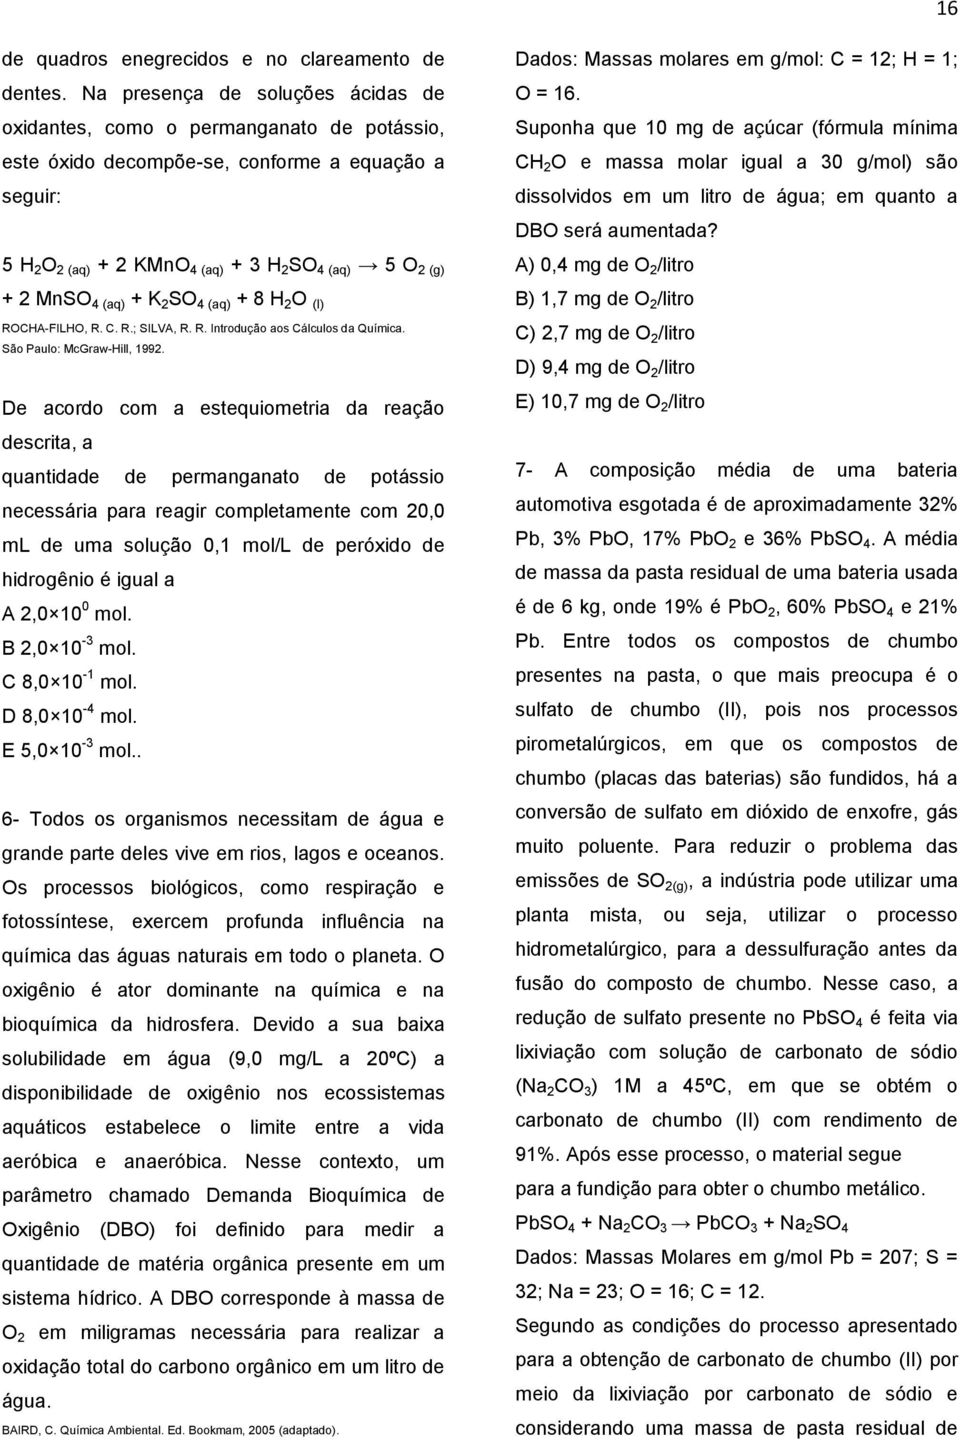 4 (aq) + K 2 SO 4 (aq) + 8 H 2 O (l) ROCHA-FILHO, R. C. R.; SILVA, R. R. Introdução aos Cálculos da Química. São Paulo: McGraw-Hill, 1992.